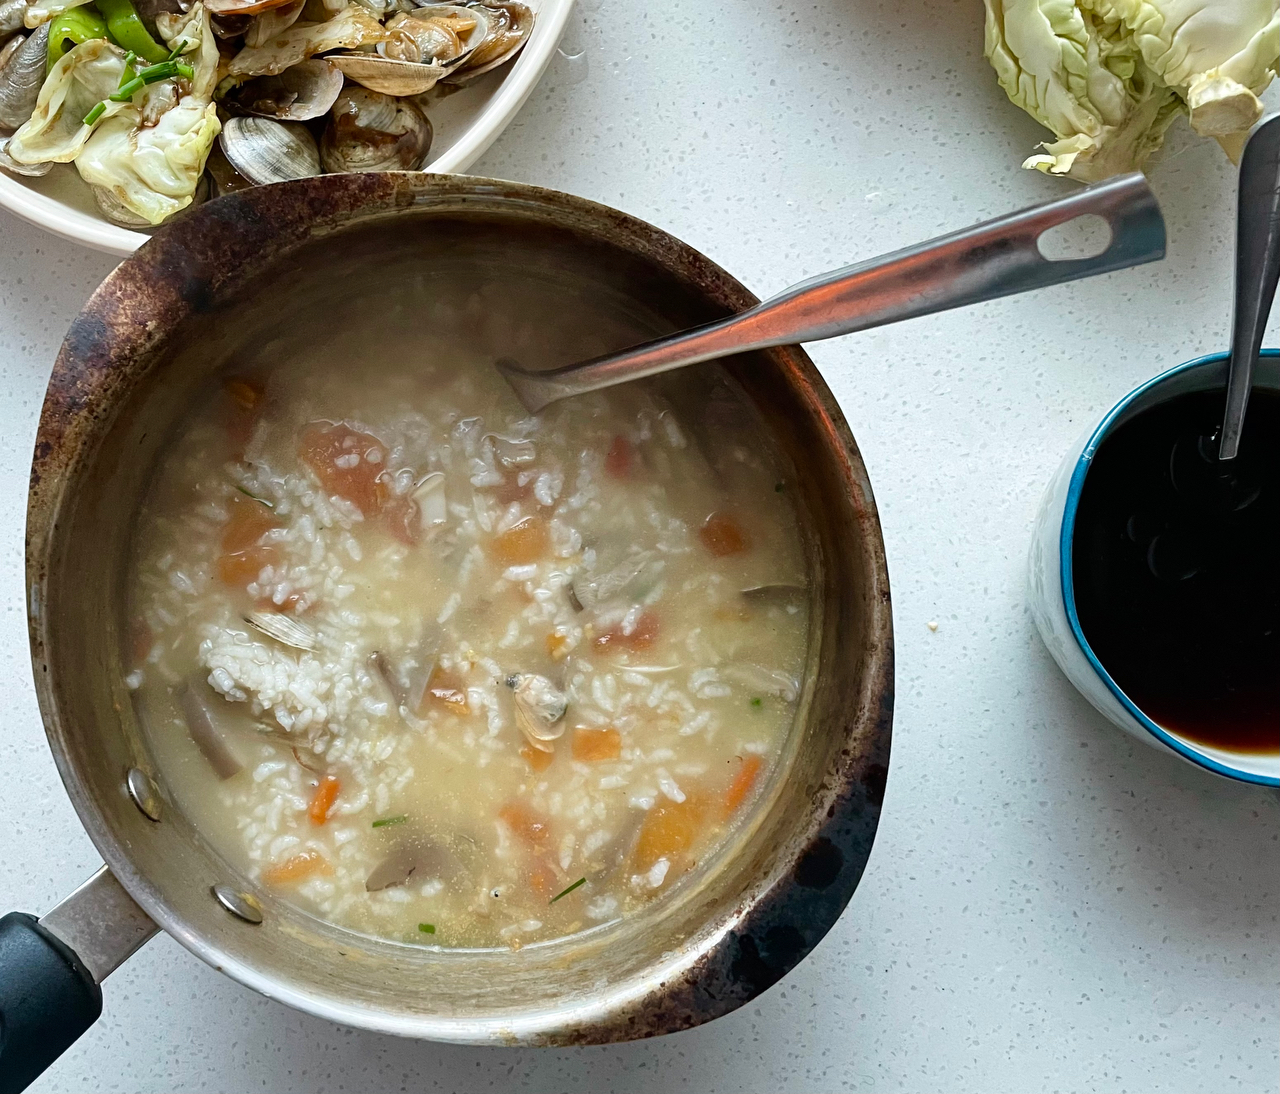 海鲜汤泡饭，海鲜的一种精致吃法